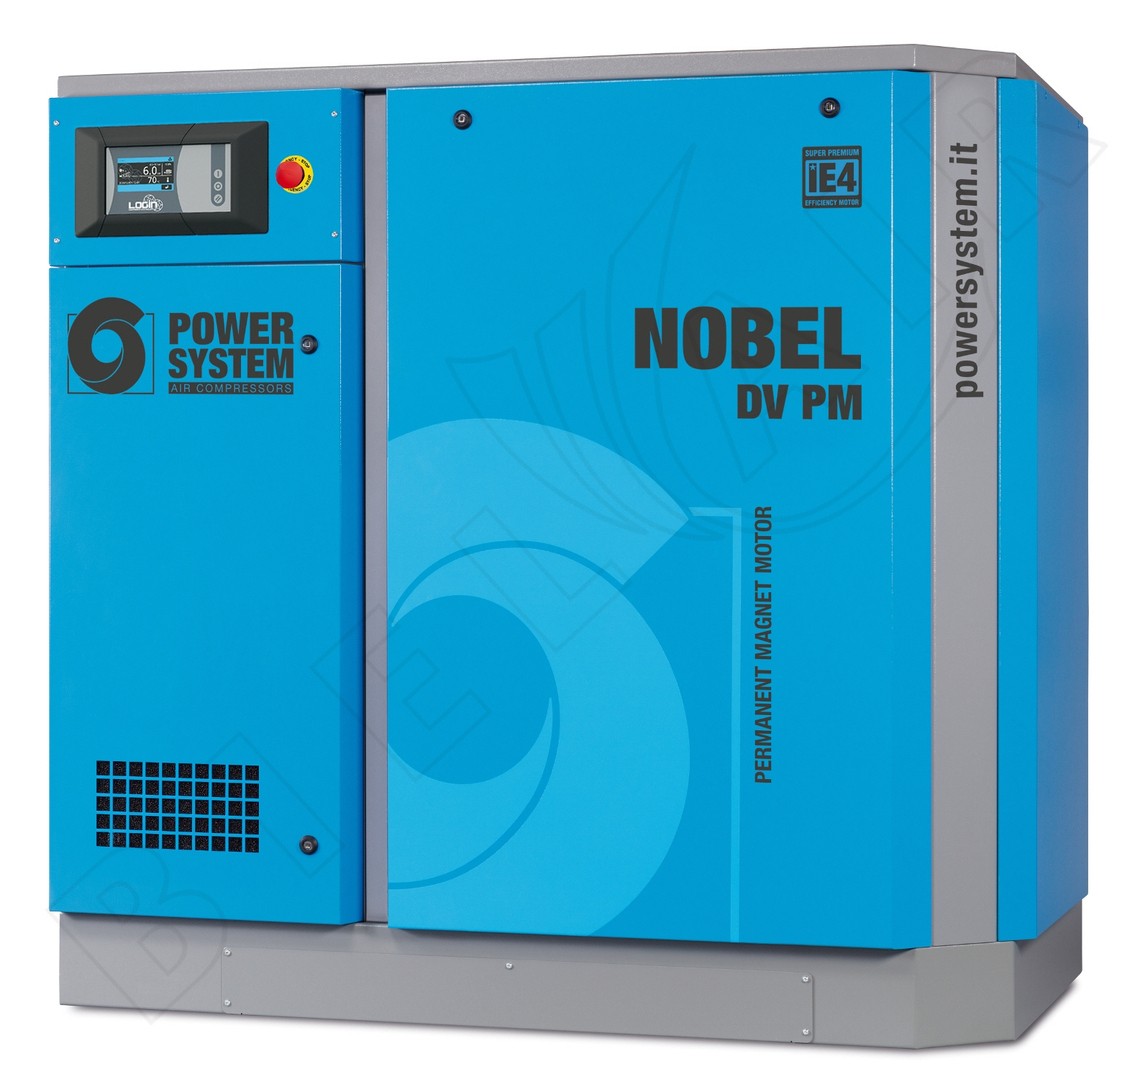 POWERSYSTEM Schraubenkompressor NOBEL 30-08 DV (PM) LOGIN Frequenzgesteuert